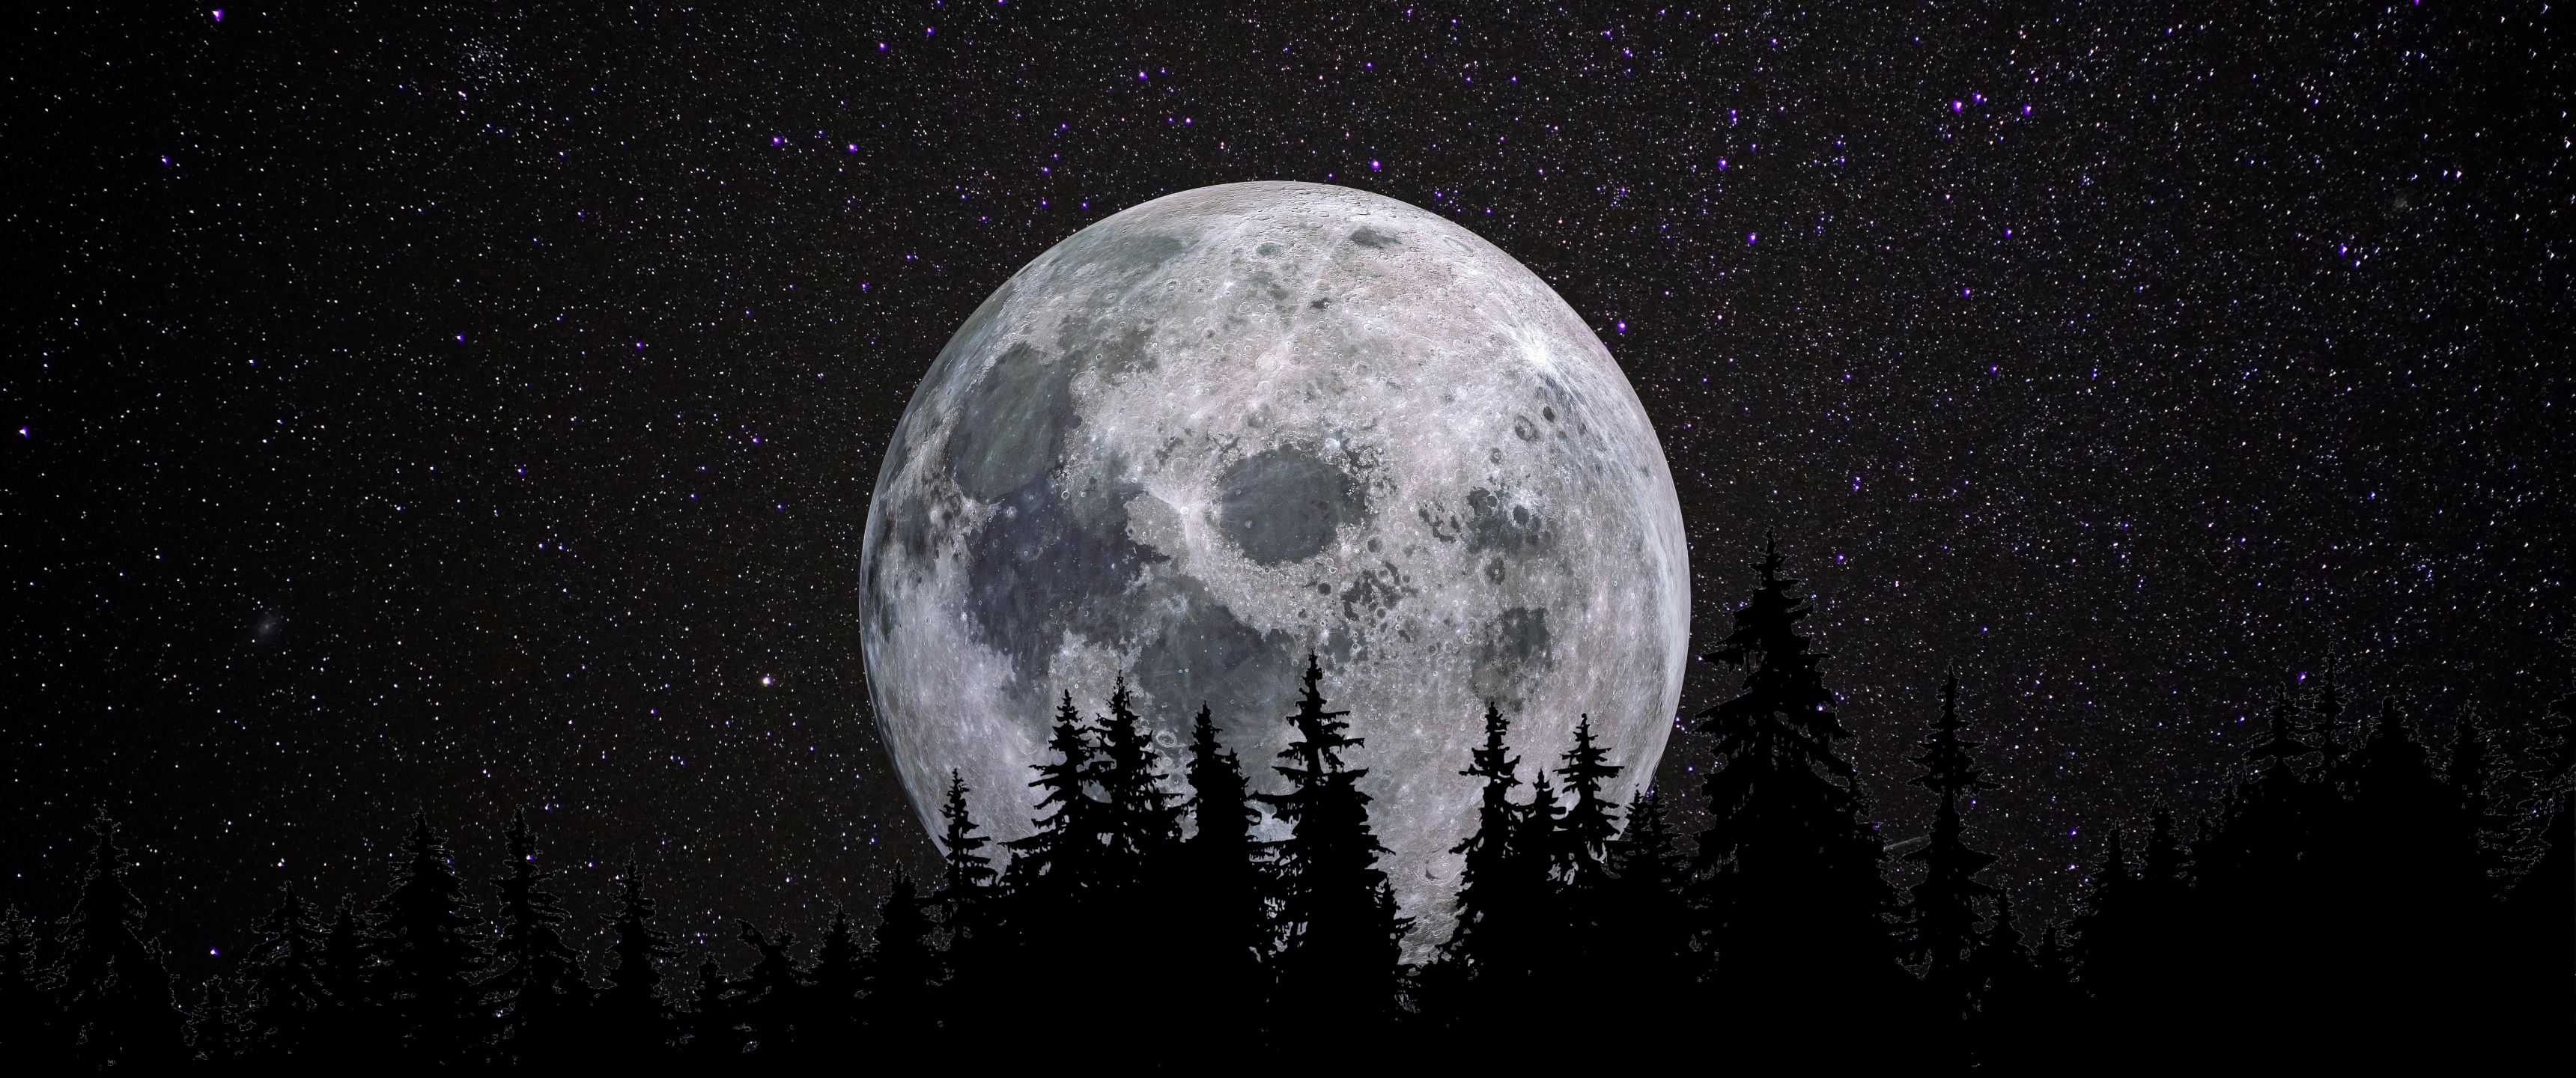 Hãy đắm mình trong cảm giác rực rỡ của mặt trăng tròn đầy rực sáng, tràn ngập bầu trời đêm. Sự mê hoặc của ánh sáng và bóng tối tạo thành nên một bức tranh tuyệt đẹp. Nhấn vào hình ảnh để tận hưởng khoảnh khắc đầy lãng mạn của mặt trăng đêm nay.